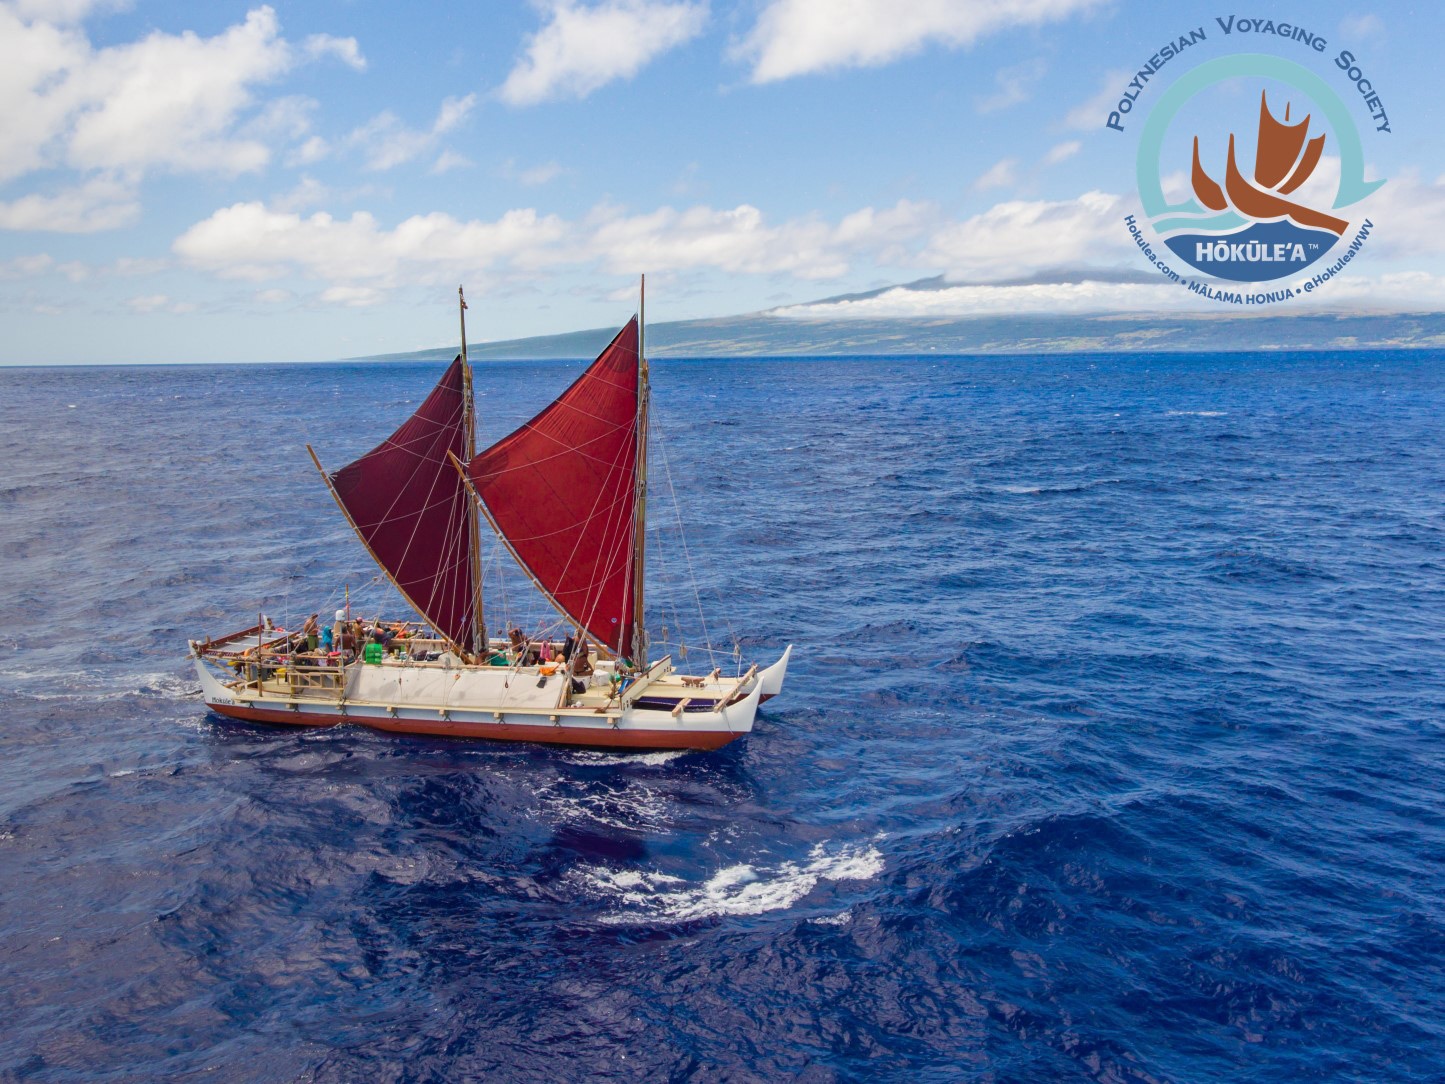 古代ポリネシアの伝統航海カヌー「ホクレア号」ドキュメンタリー映画、日本初上映